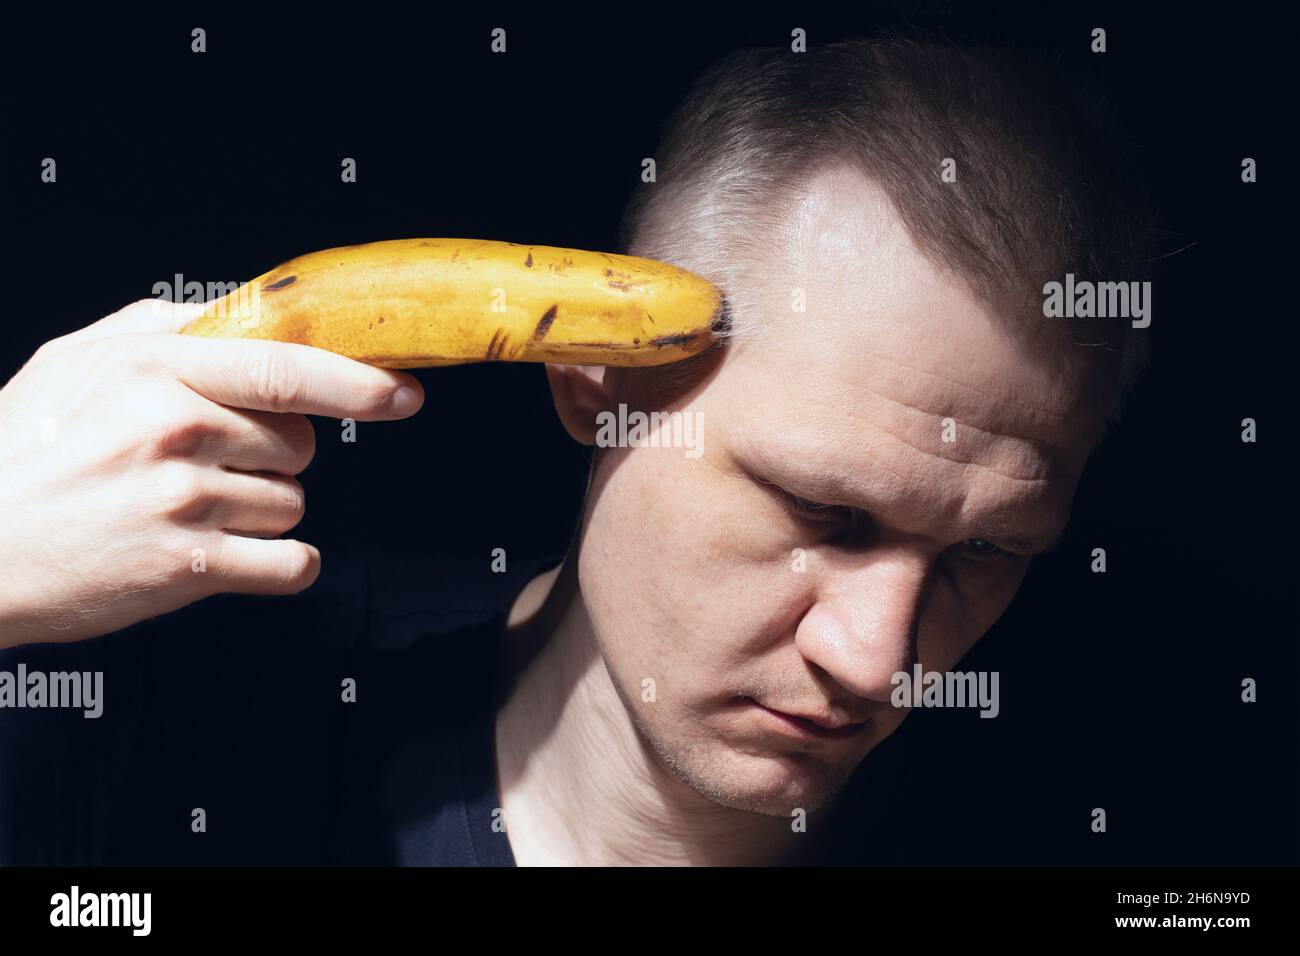 Der Mann hält Banane wie eine Pistole auf schwarzem Hintergrund nahe an seinem Kopf. Schießen Sie sich mit Banane. Verzweiflung, Depression und Selbstmordgedanken. Mental Stockfoto